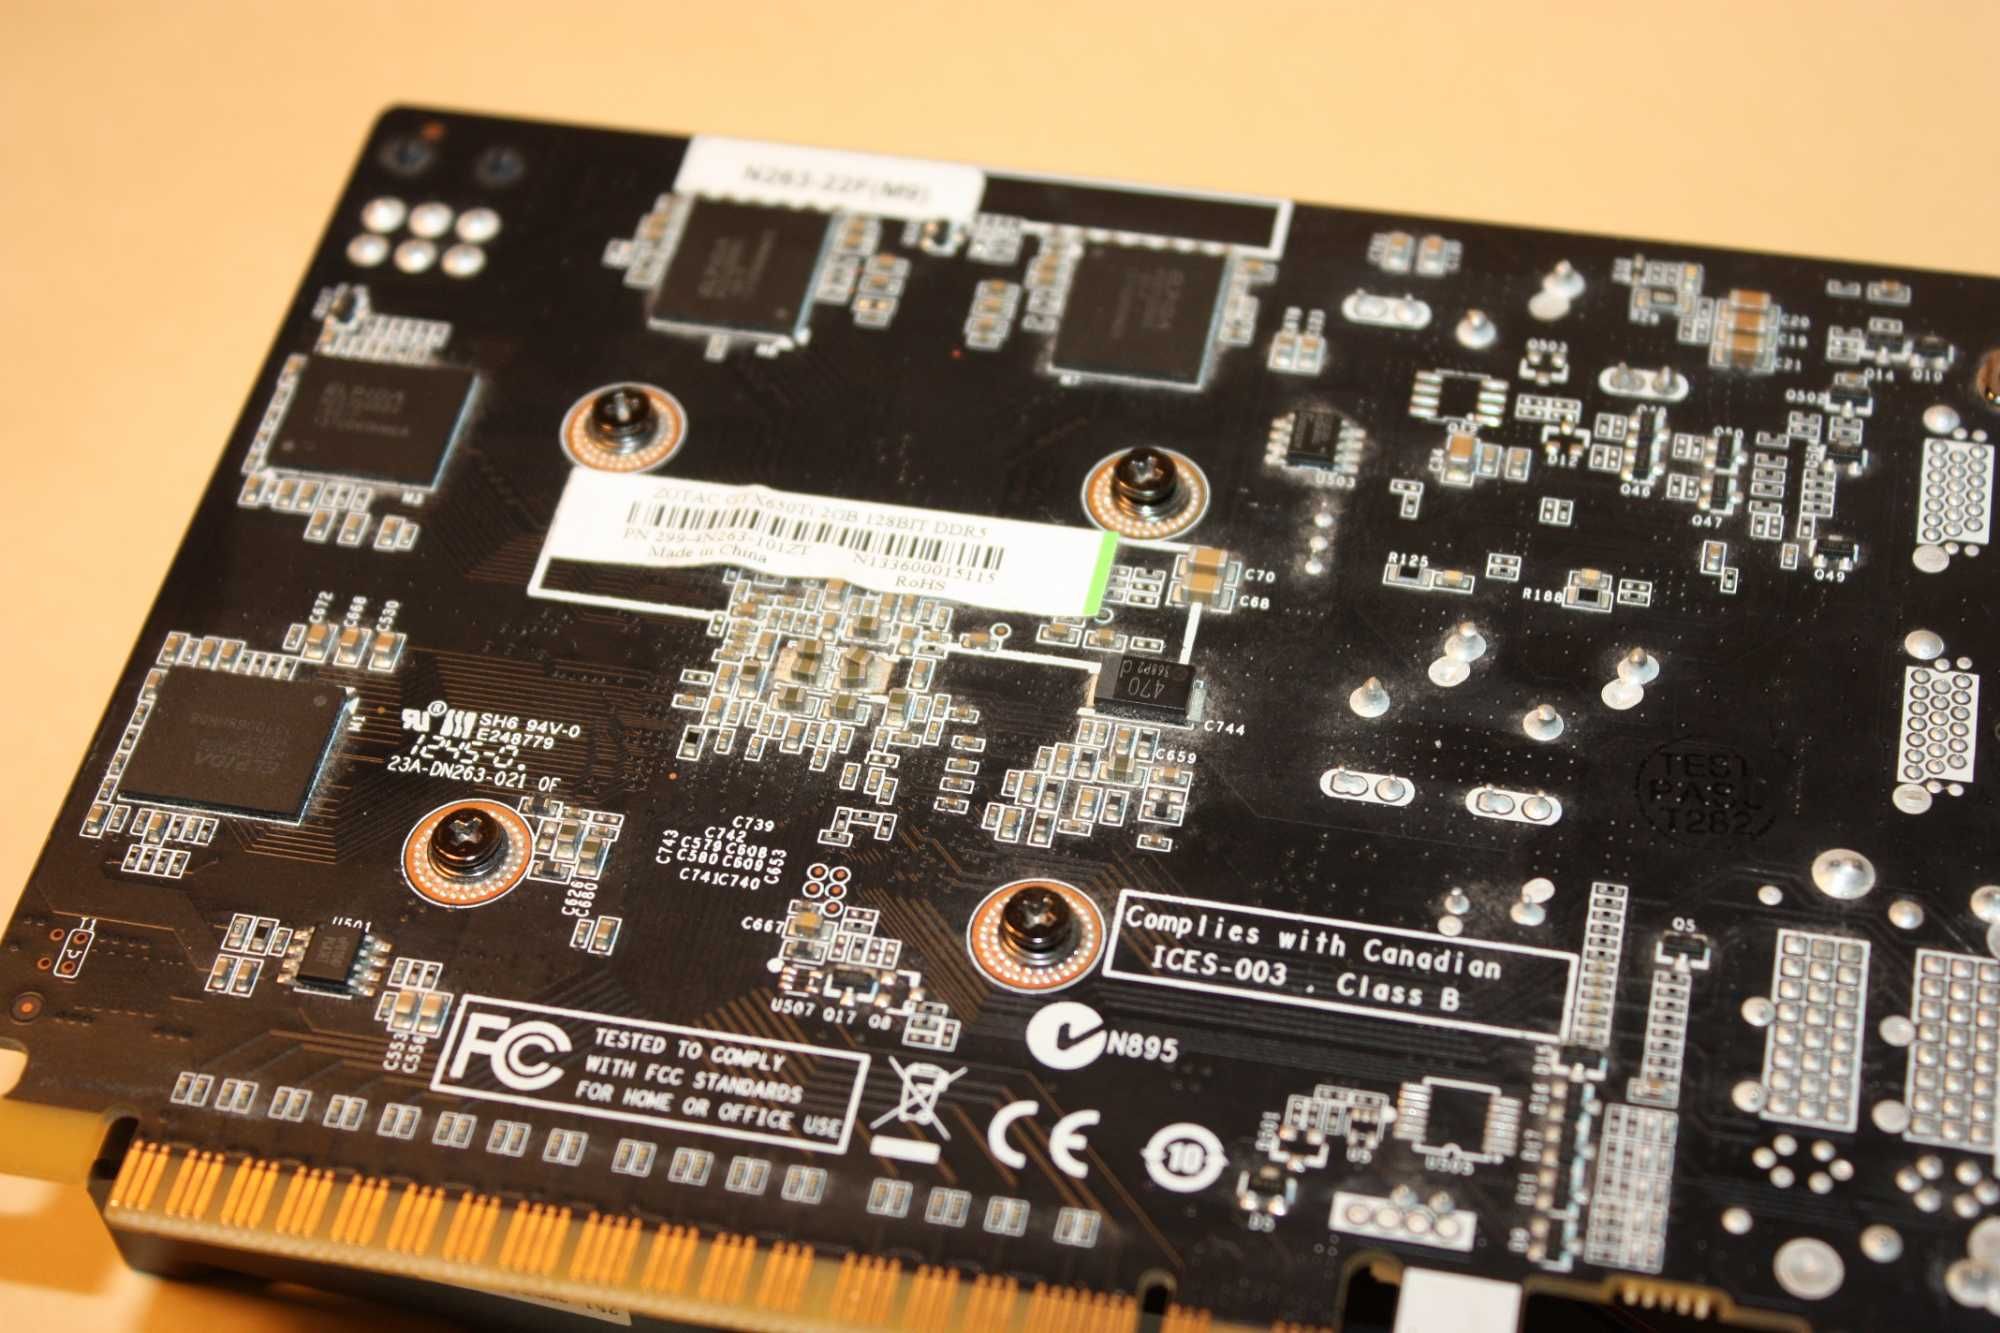 ZOTAC GTX 650 Ti 2GB/GDDR5/128 bit (2x HDMI, 2x DVI) PCIe 3.0 x16